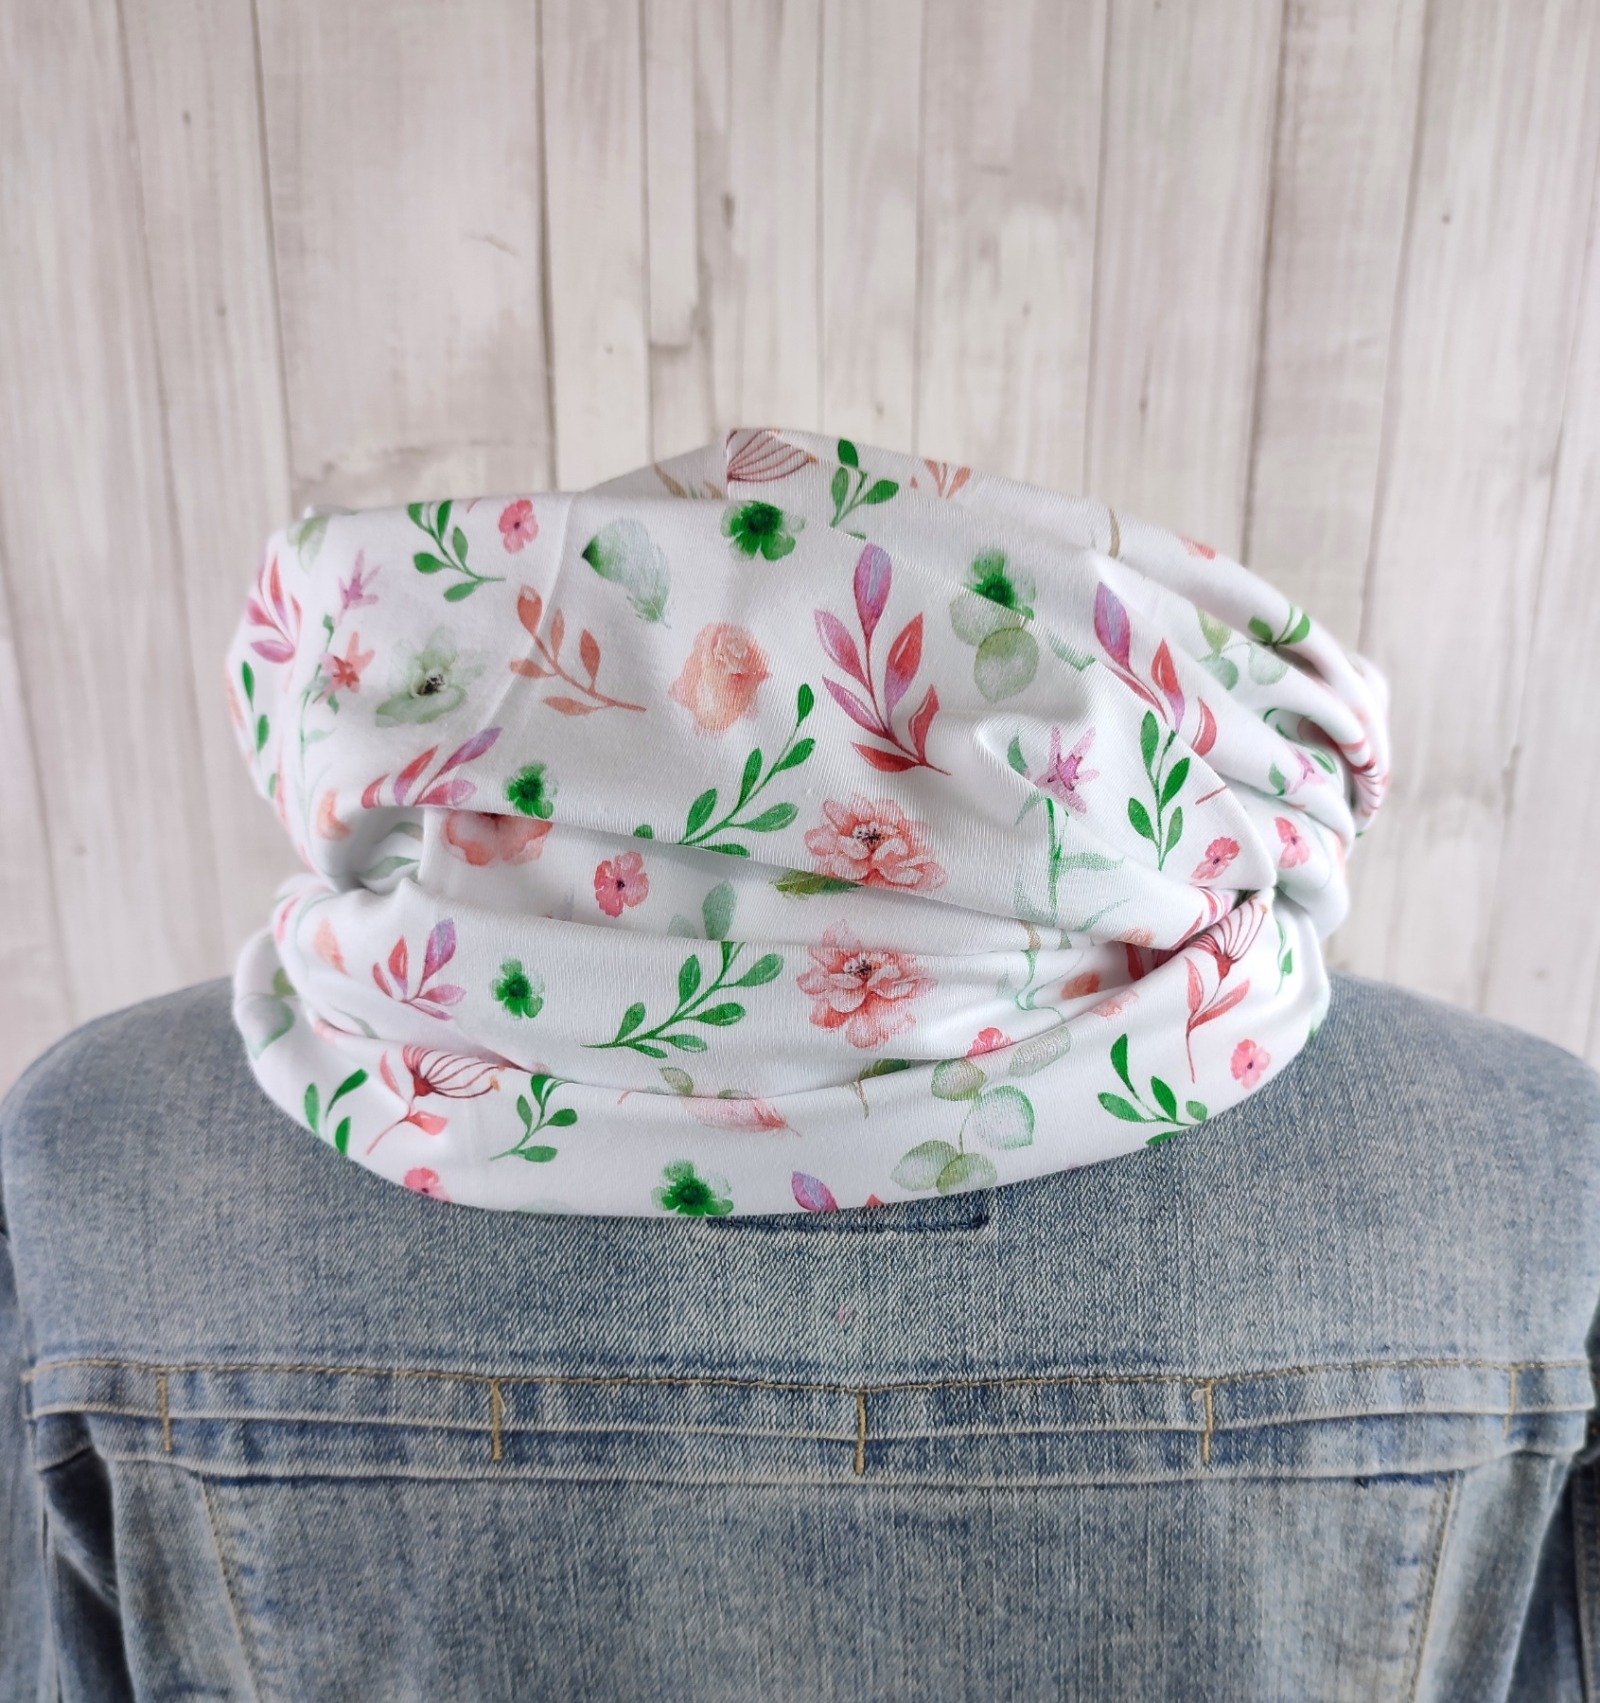 Loop Schlauchschal weiß mit kleinem Blumenmuster in lachsrosa und grün - Schal für Damen aus